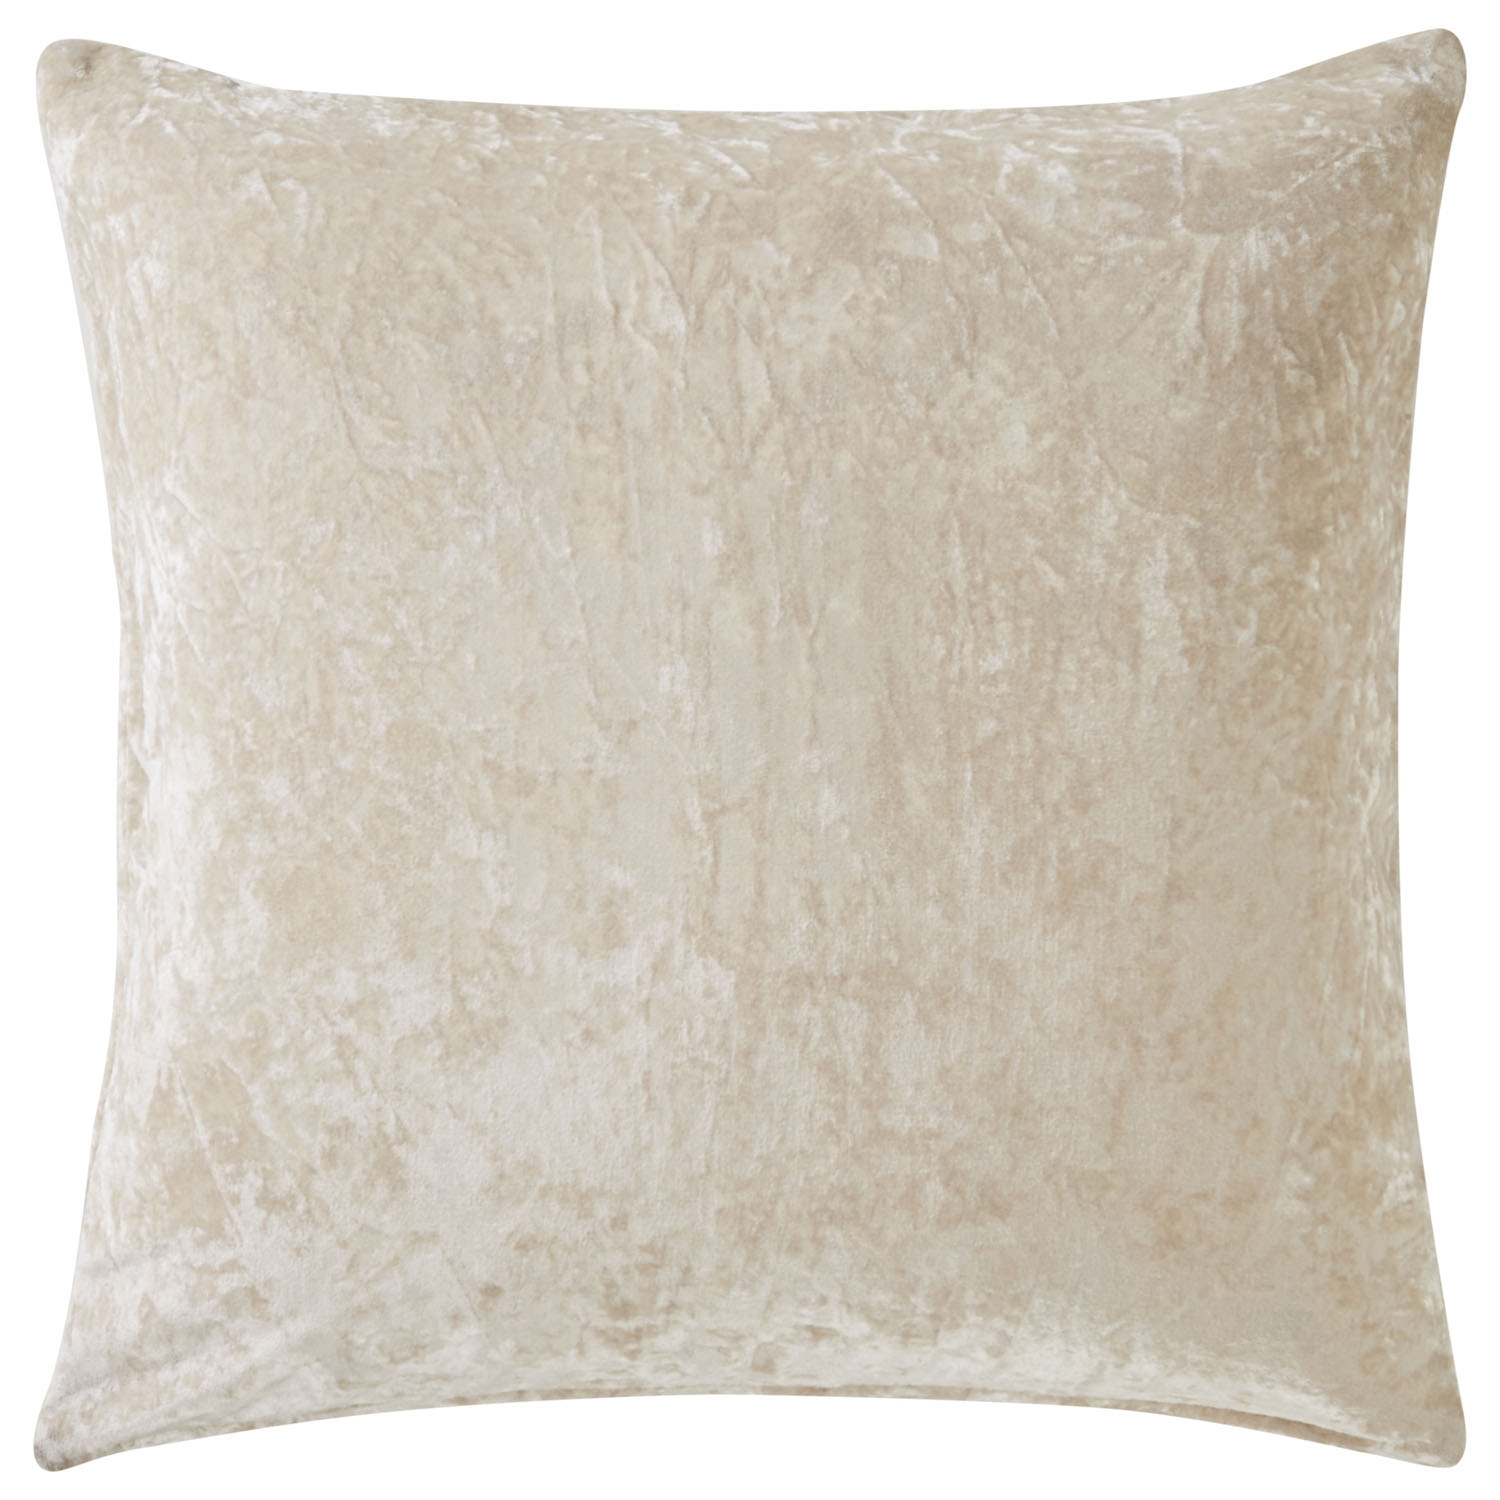 Design (US) Cream 22"X22" Pillow - Image 1